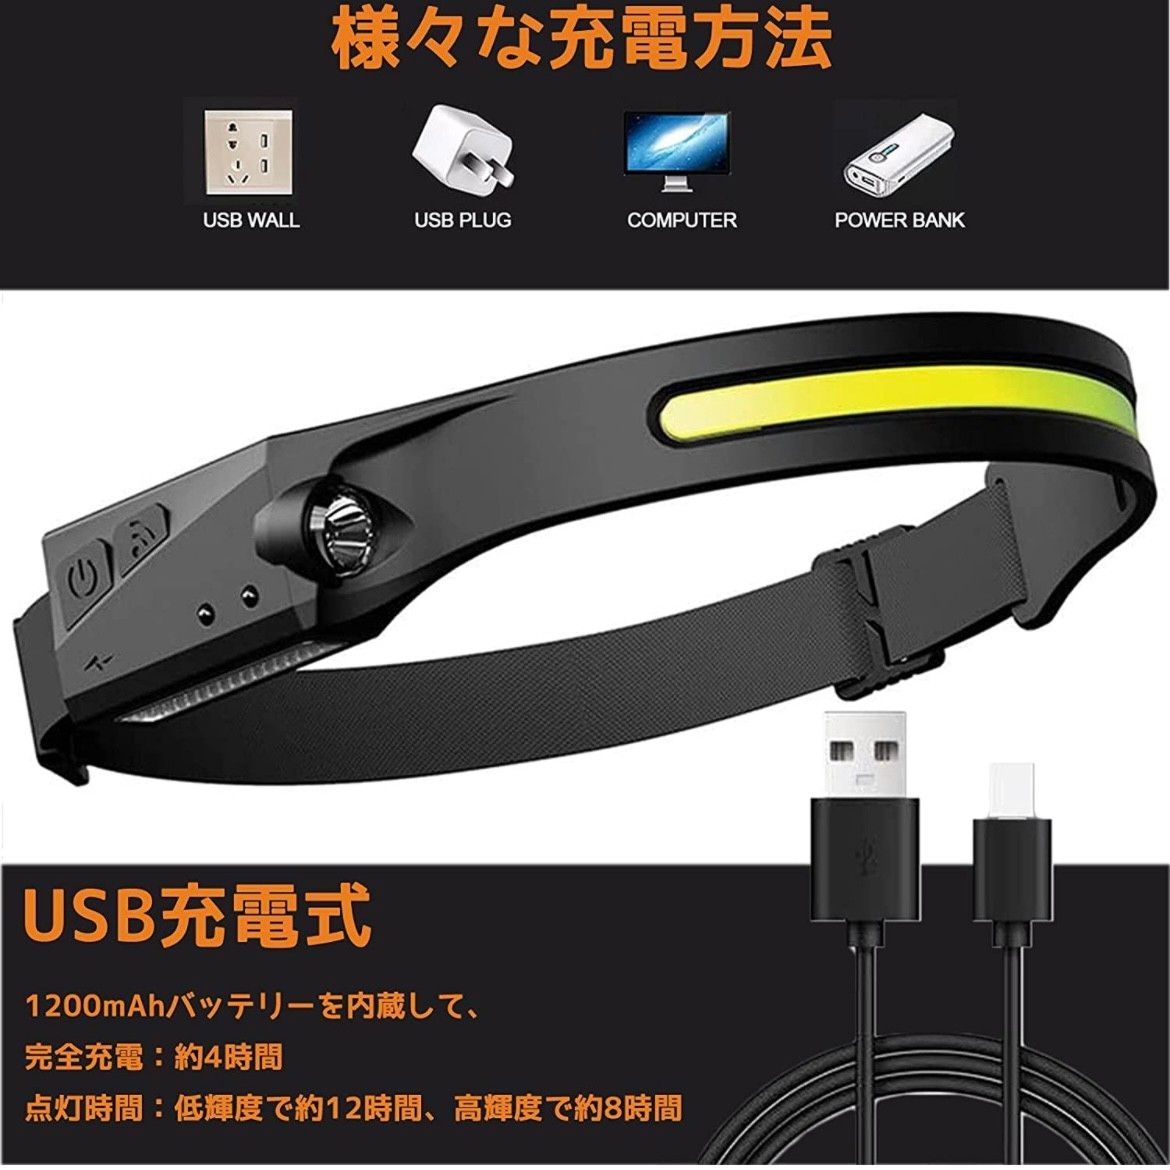 ヘッドライト 人感ライト ヘッド ランプ ライト USB IPX4防水 350ルーメン高輝度 サイズ調節可能 LED アウトドア